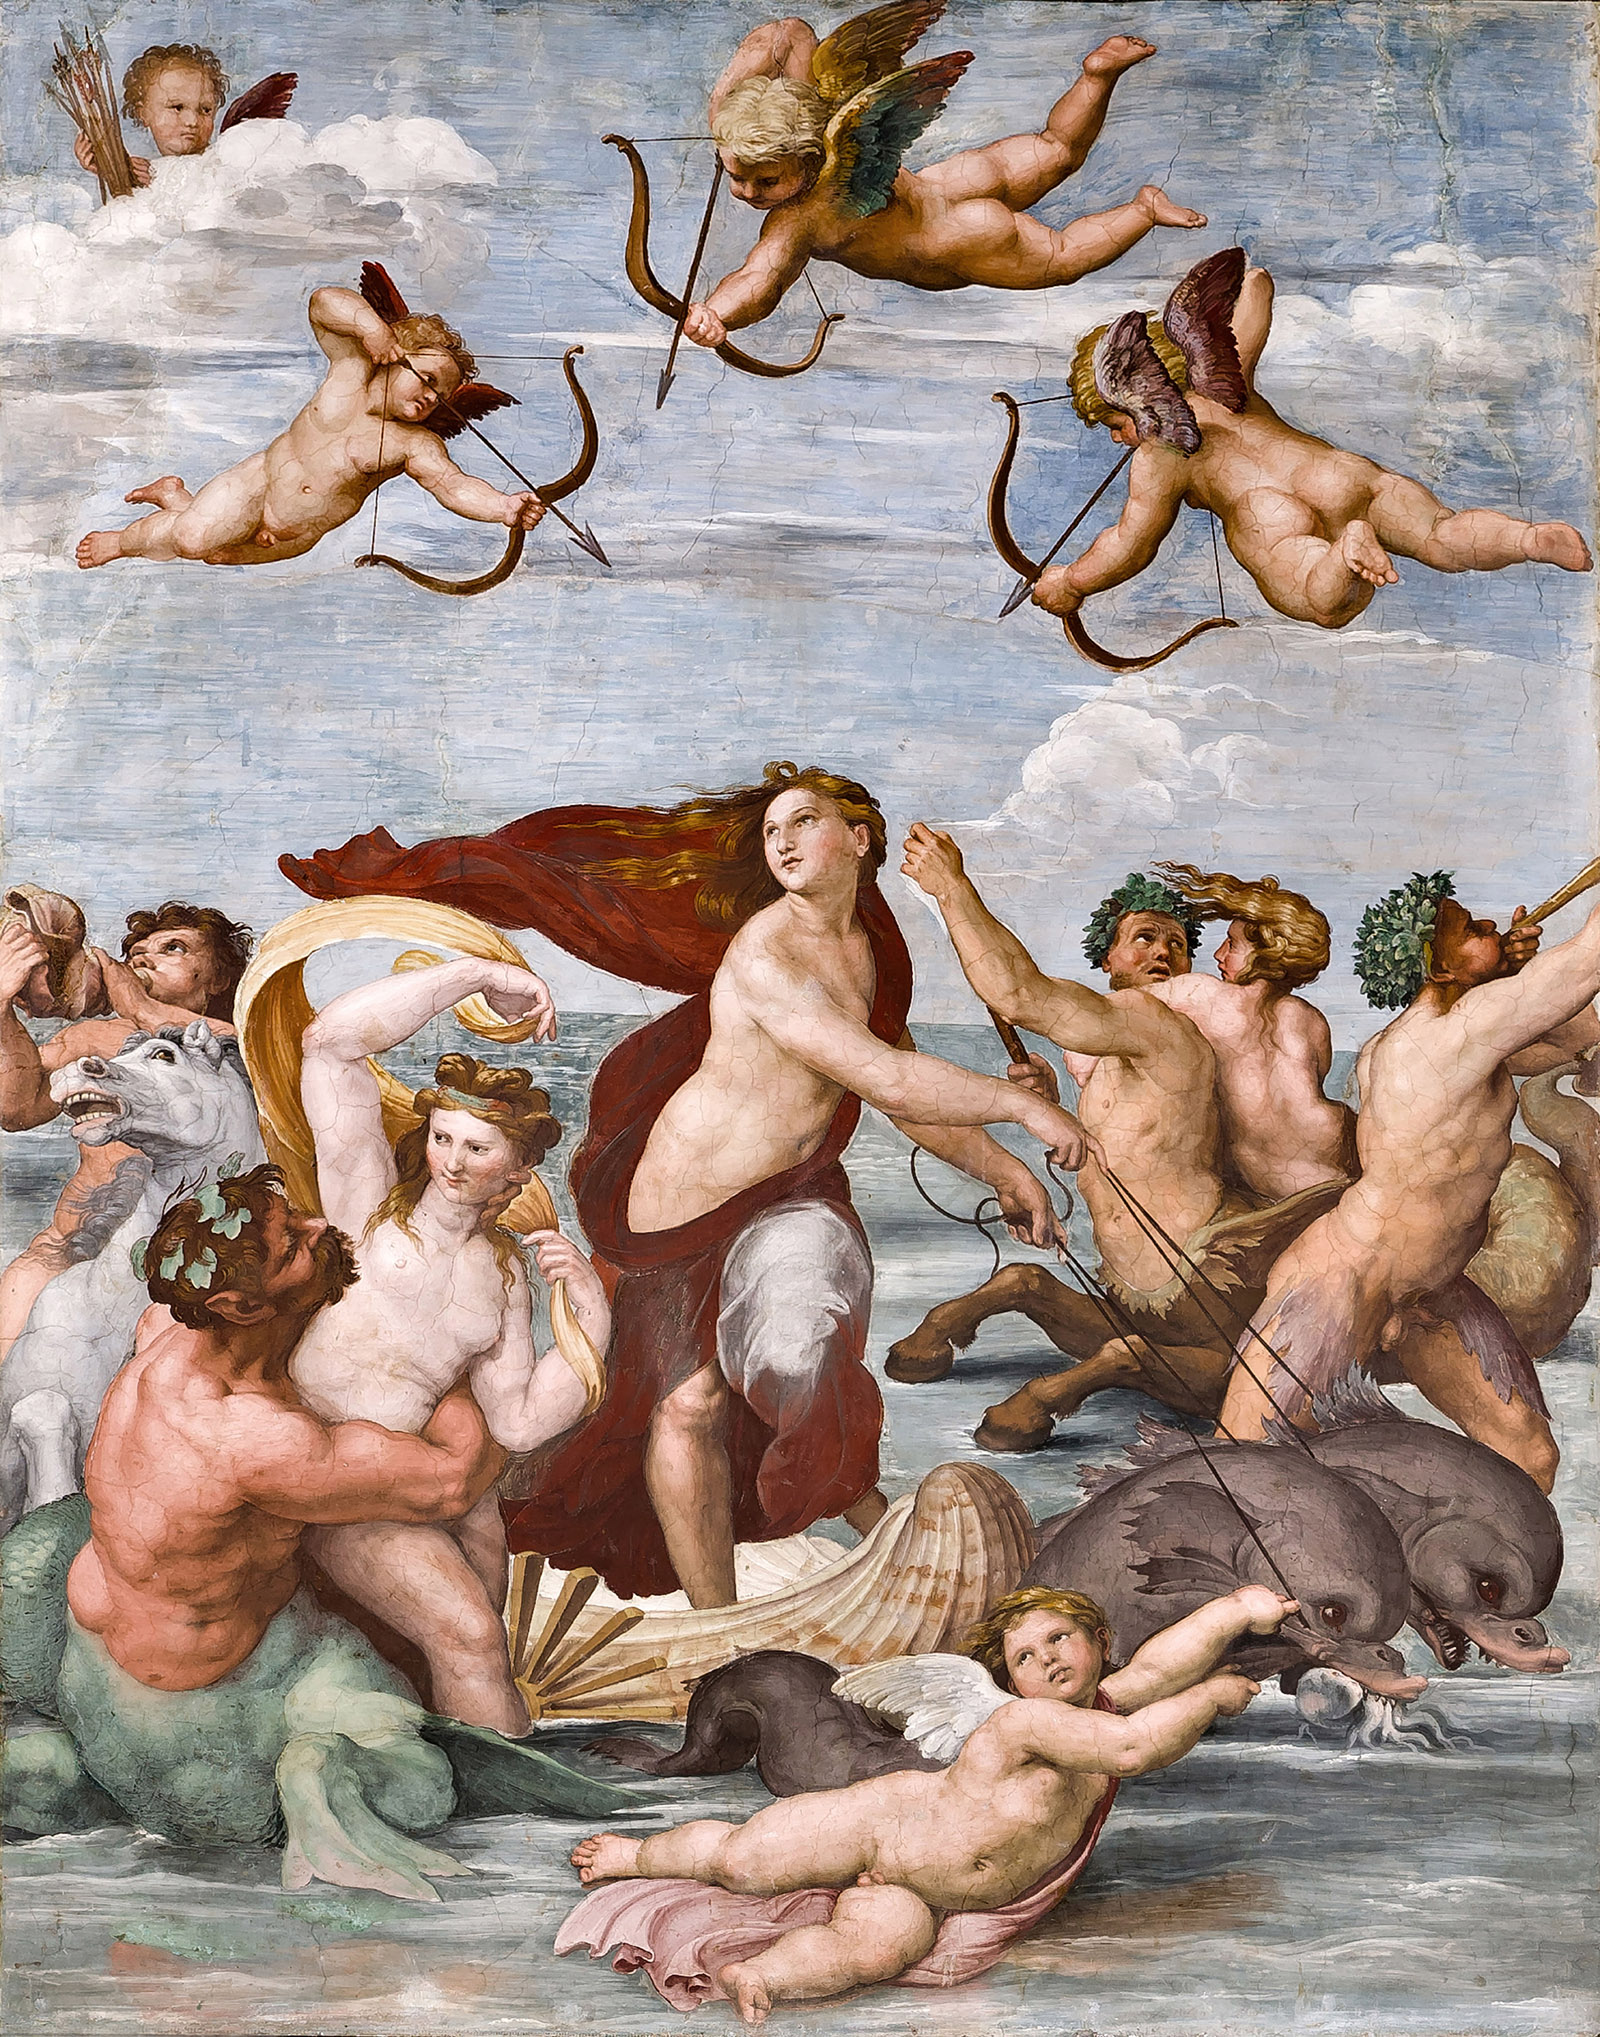 Triumph of Galatea; fresco by Raphael in the Villa Farnesina, Rome